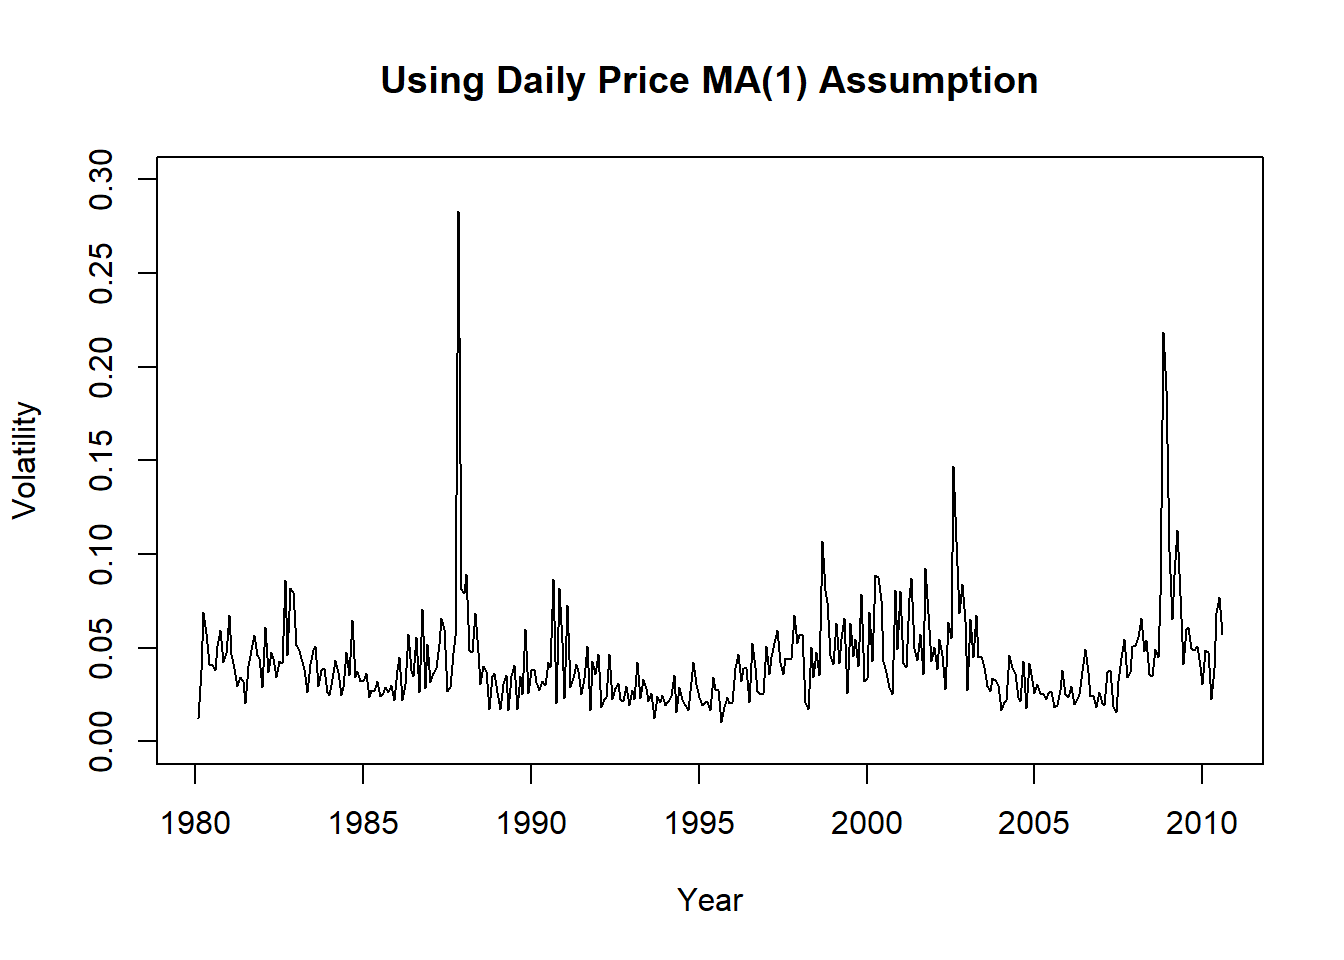 标普500月波动率用假定MA(1)日频数据估计